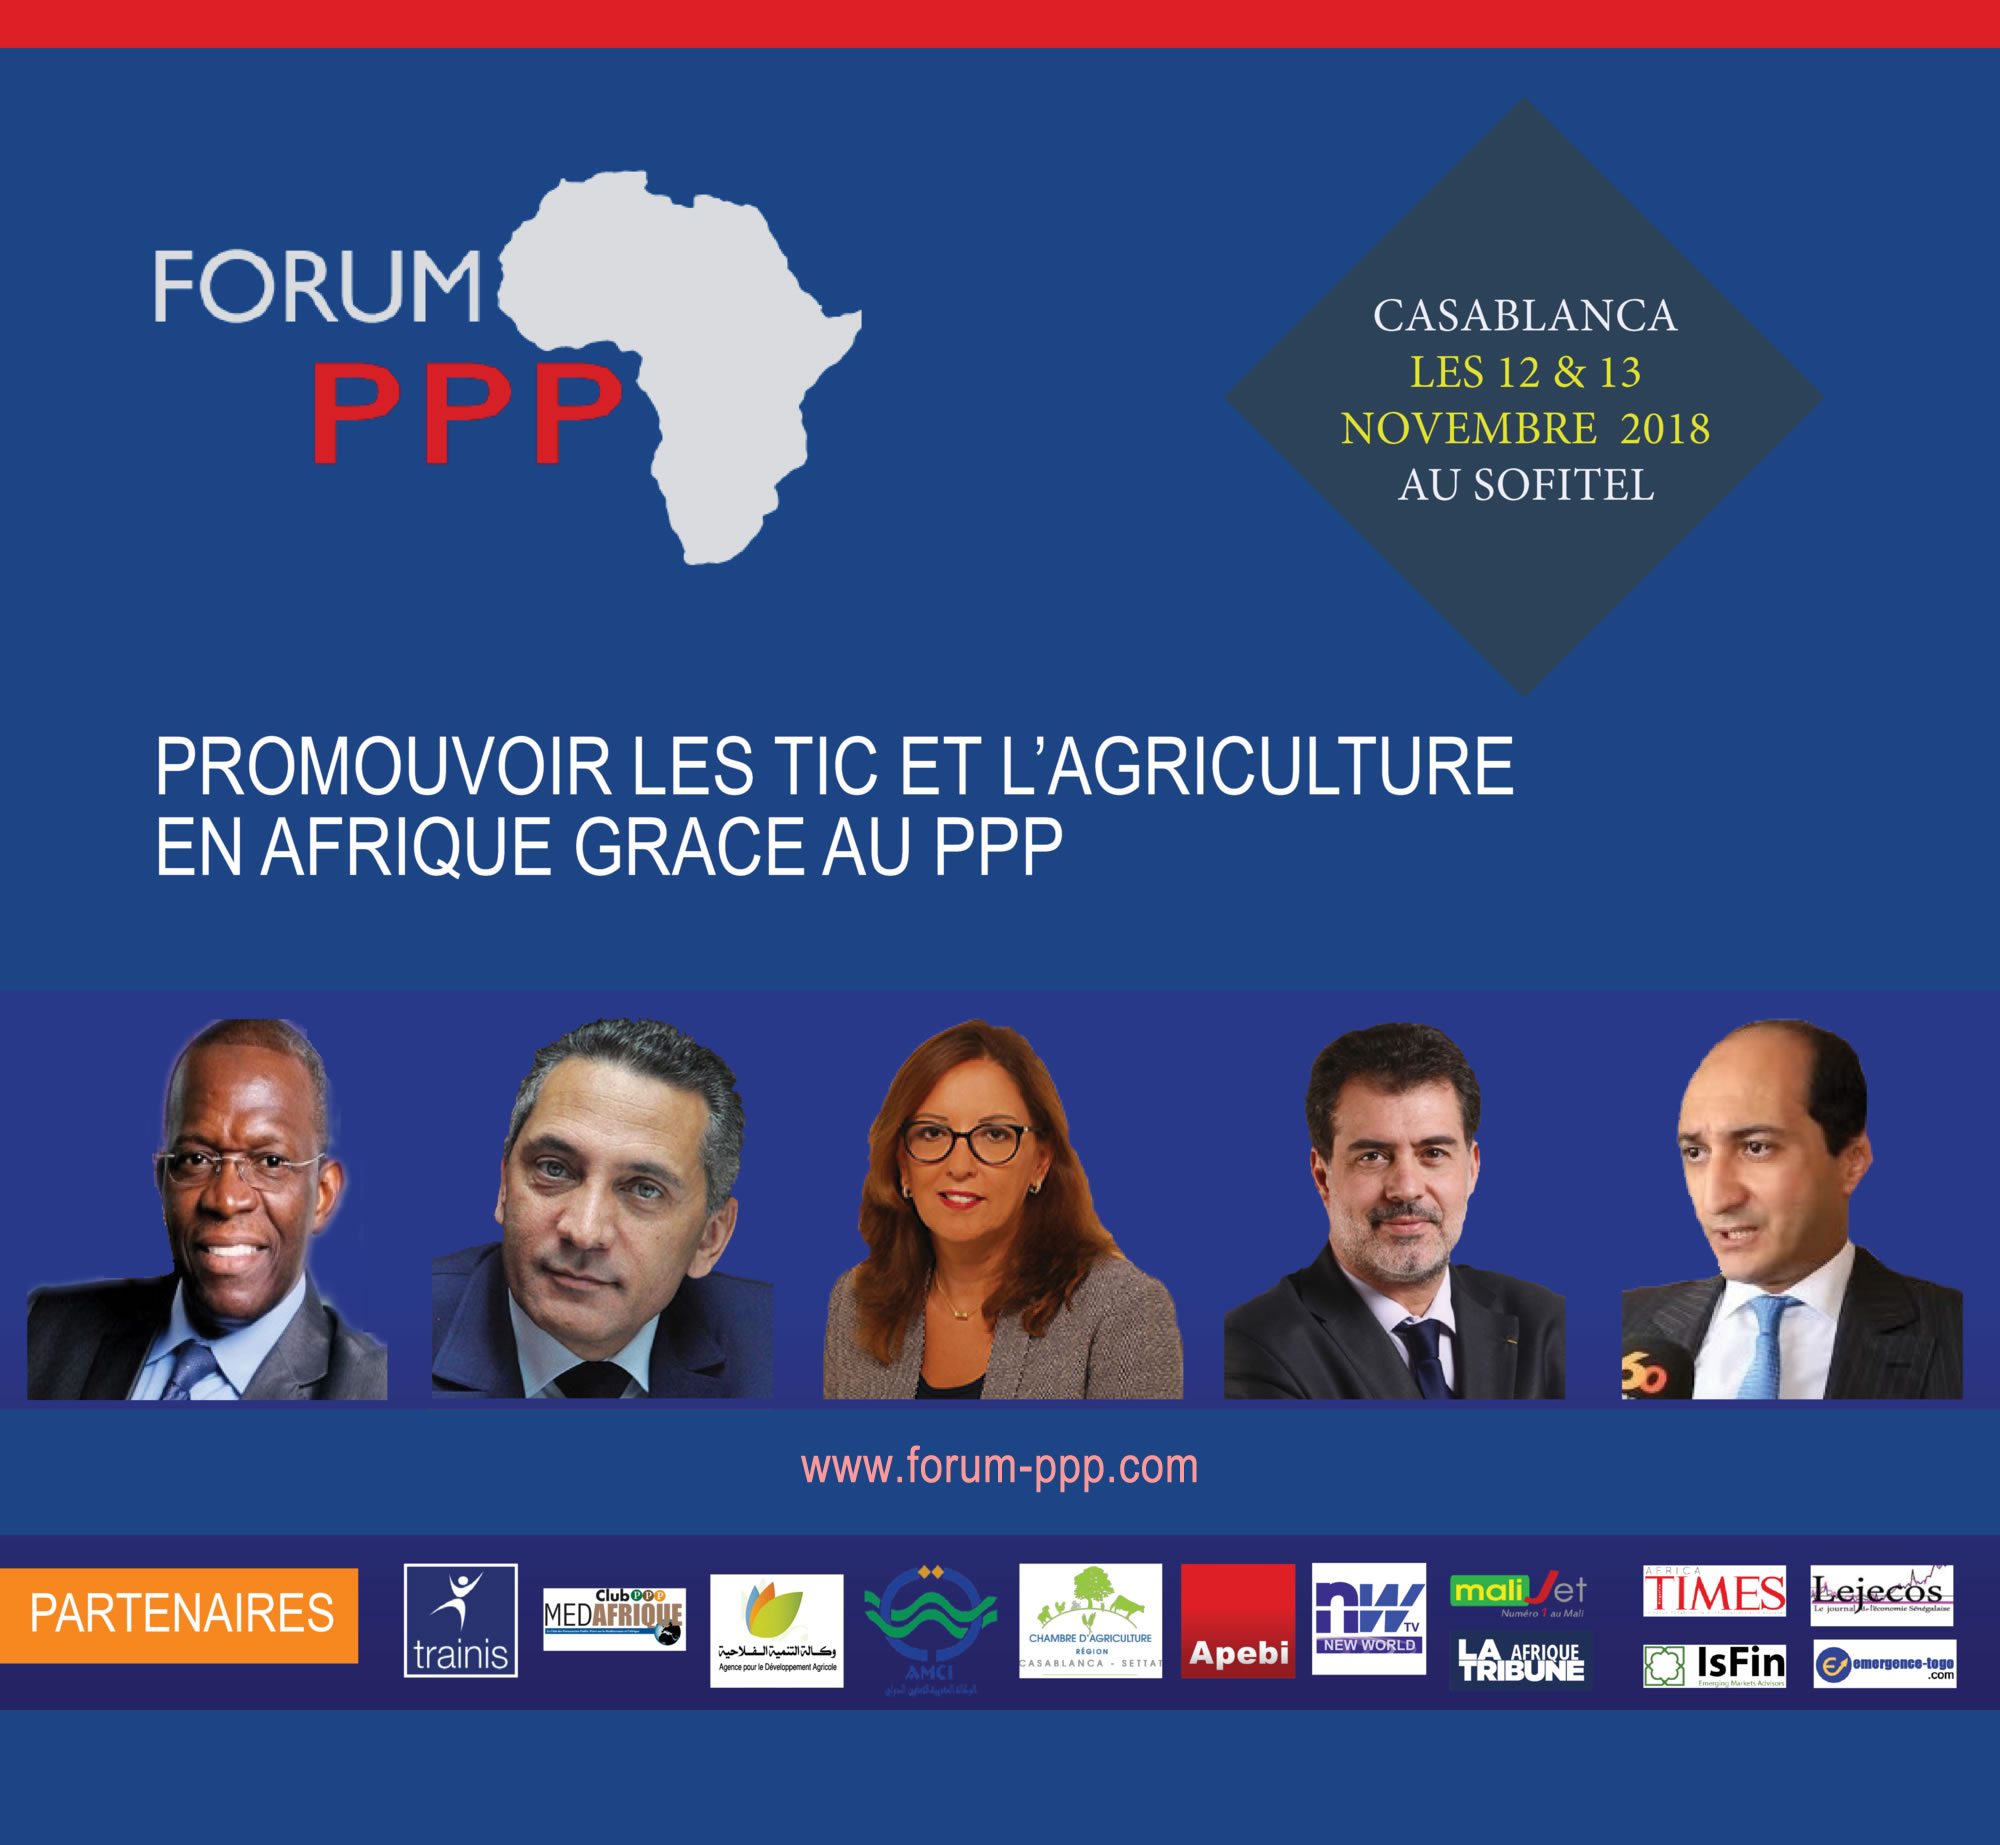 Casablanca accueille la 2e édition du Forum PPP Afrique les 12 et 13 novembre 2018